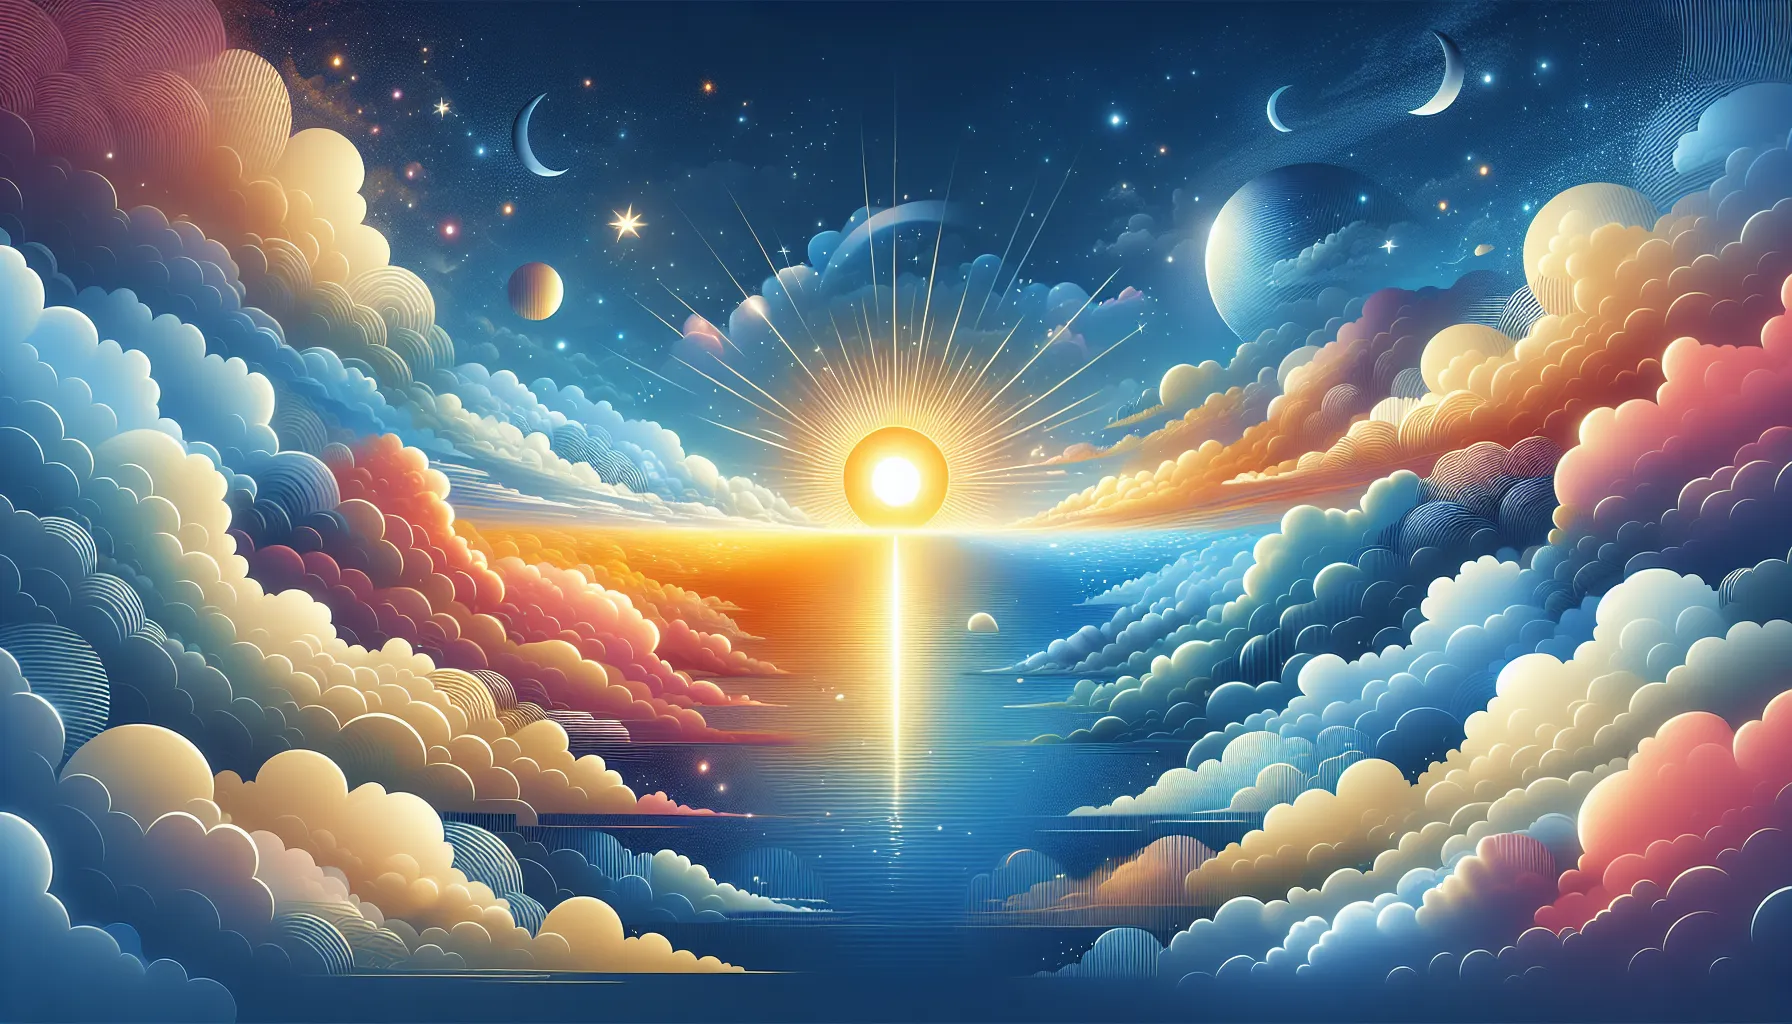 Una imagen de un cielo colorido con nubes dispersas y un sol brillante, simbolizando la llegada del día del Señor con señales de su venida.